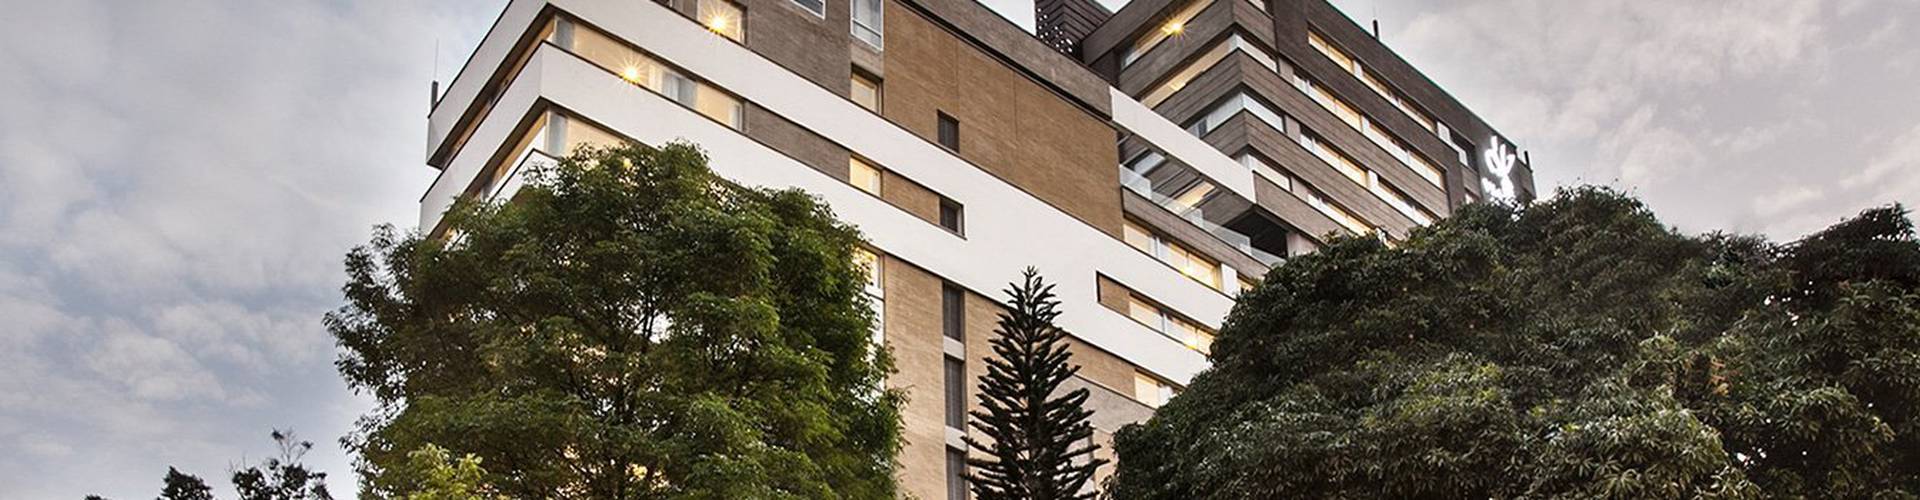 Viaggio Apartamentos & Hoteles - Medellín - 